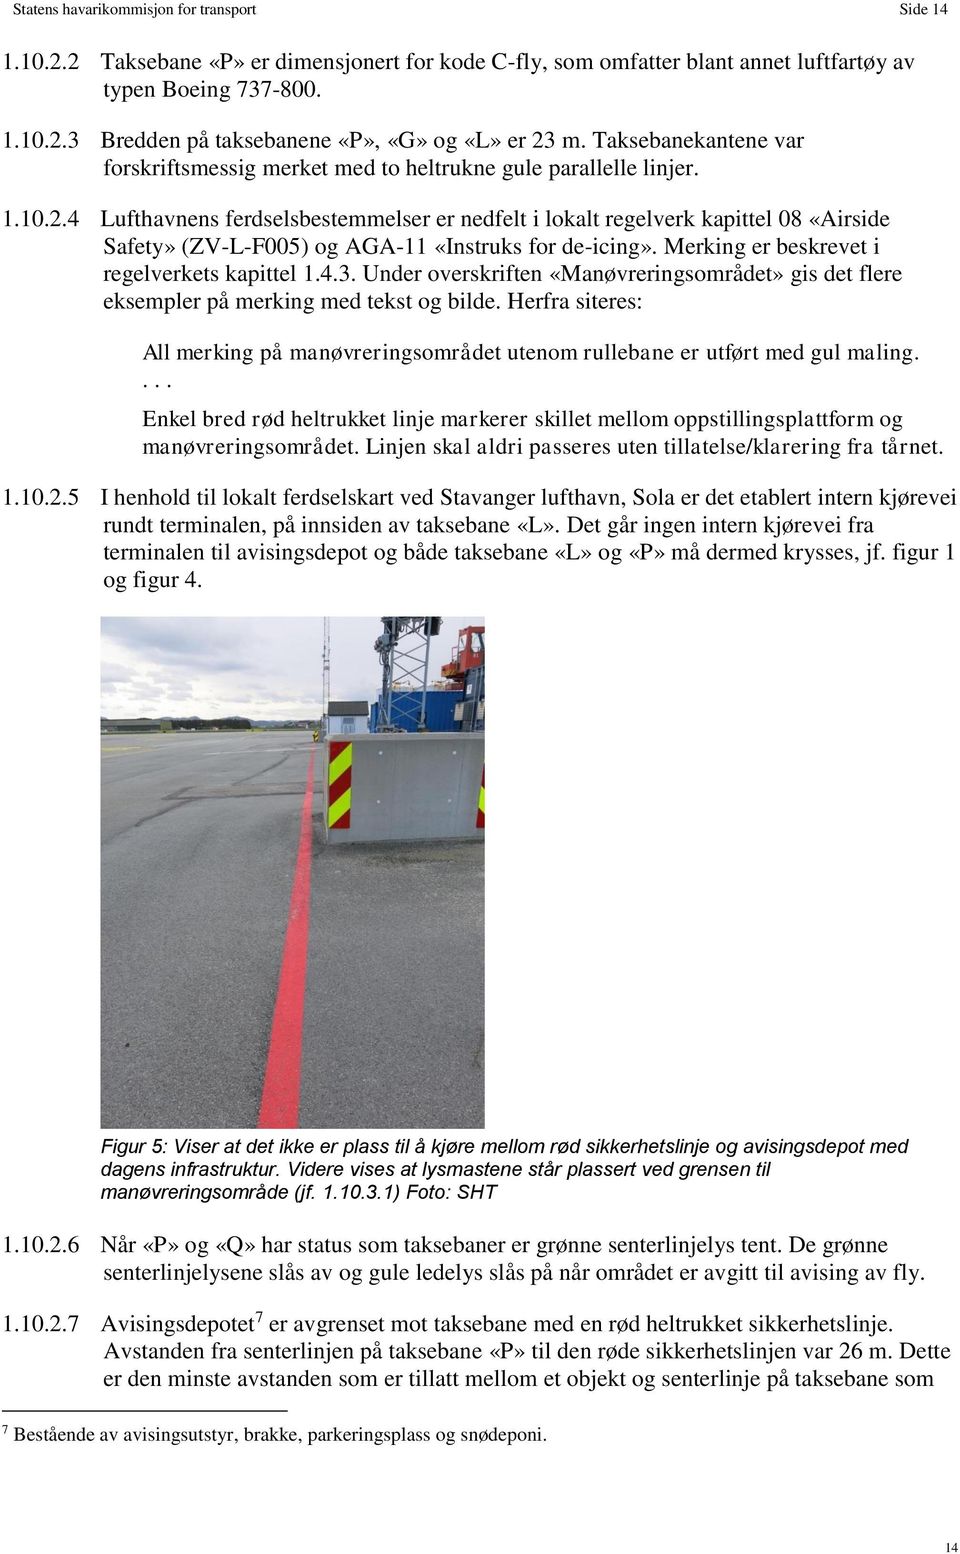 4 Lufthavnens ferdselsbestemmelser er nedfelt i lokalt regelverk kapittel 08 «Airside Safety» (ZV-L-F005) og AGA-11 «Instruks for de-icing». Merking er beskrevet i regelverkets kapittel 1.4.3.